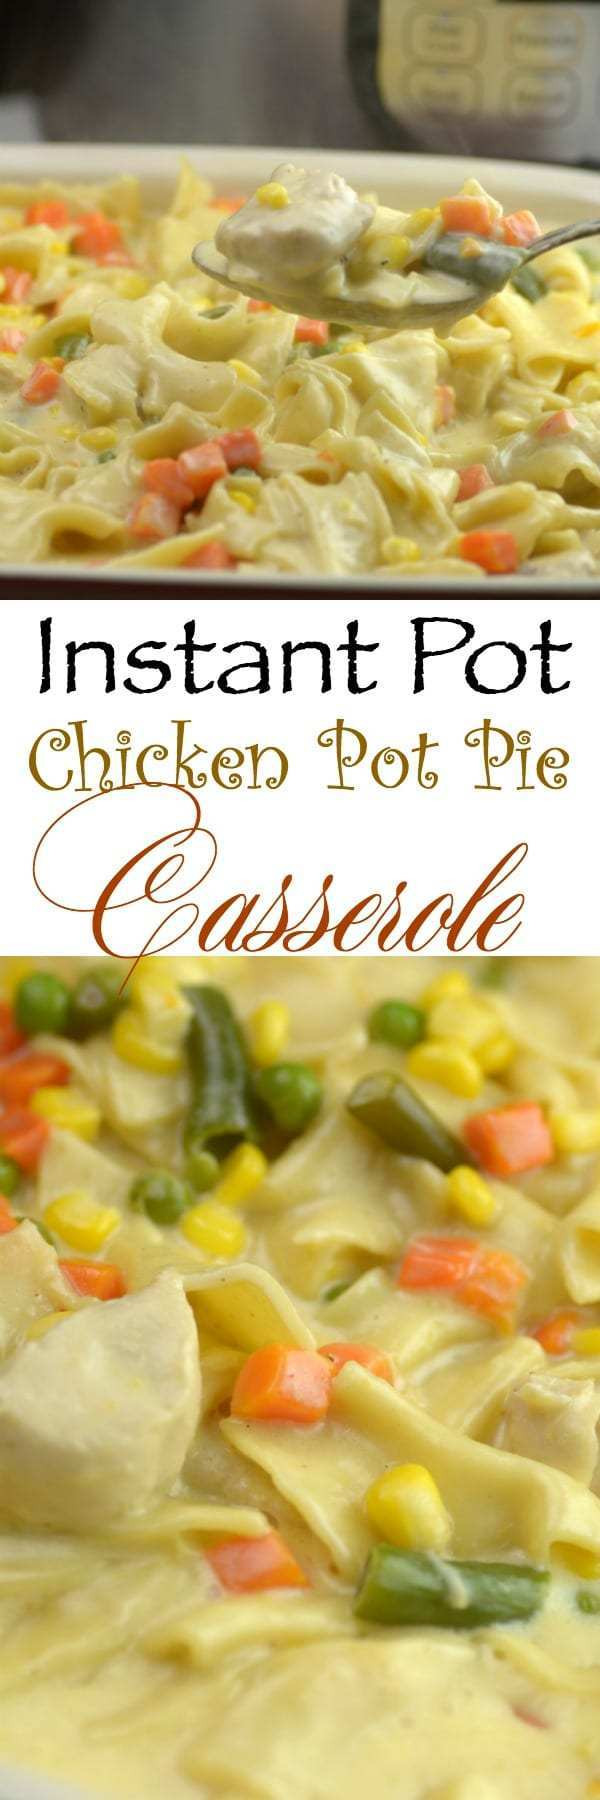 Instant Pot Chicken Pot Pie
 Instant Pot Chicken PotPie Casserole